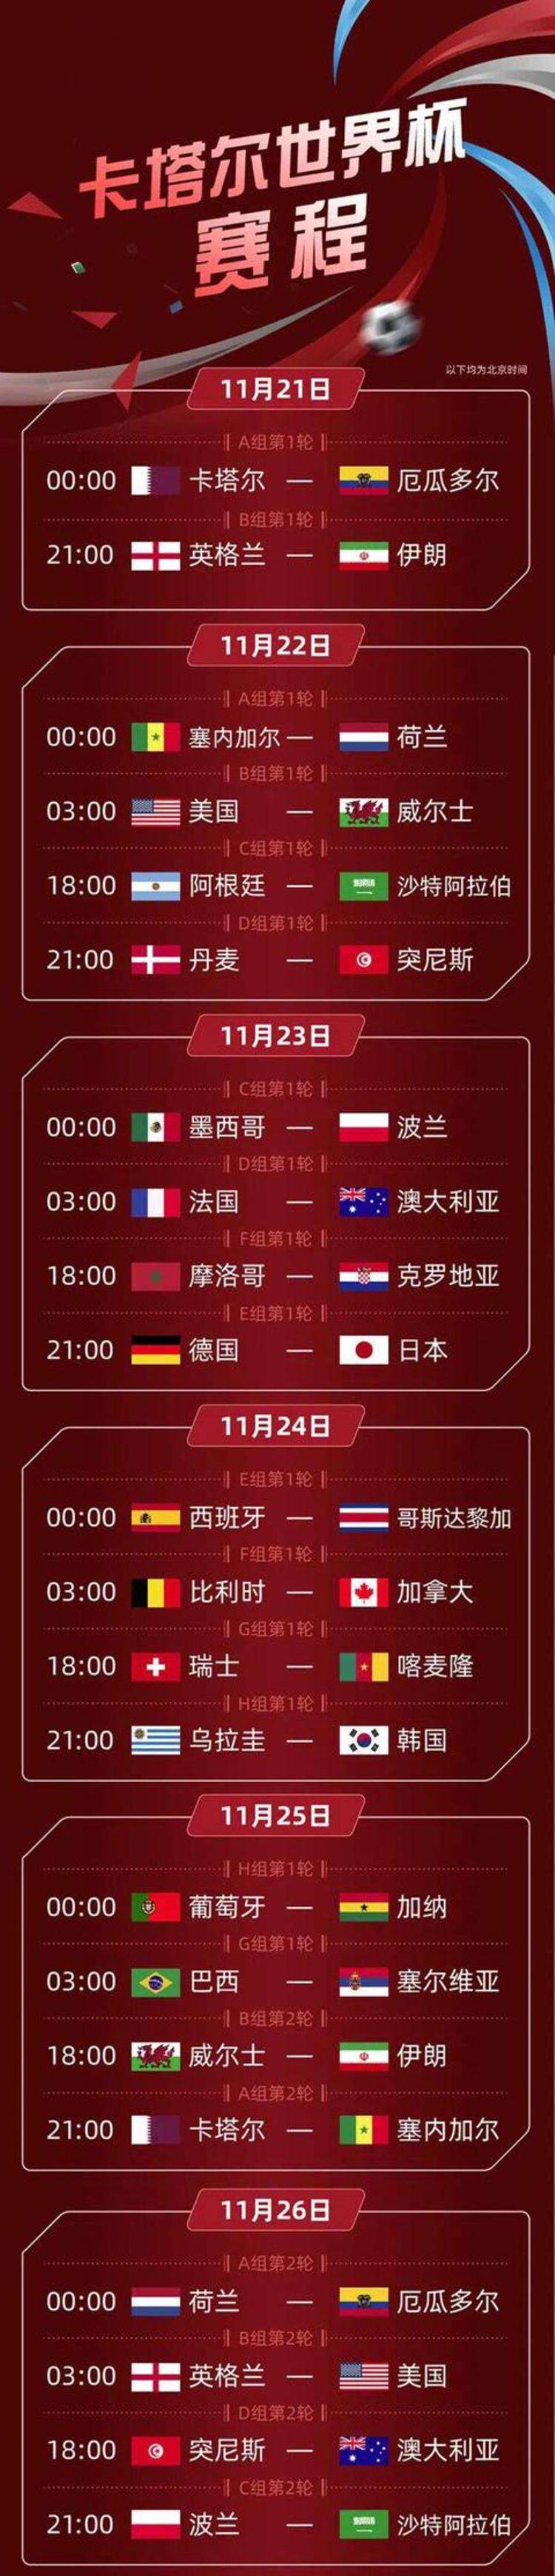 世界杯赛程最新时间表均为北京时间「世界杯赛程最新时间表均为北京时间」